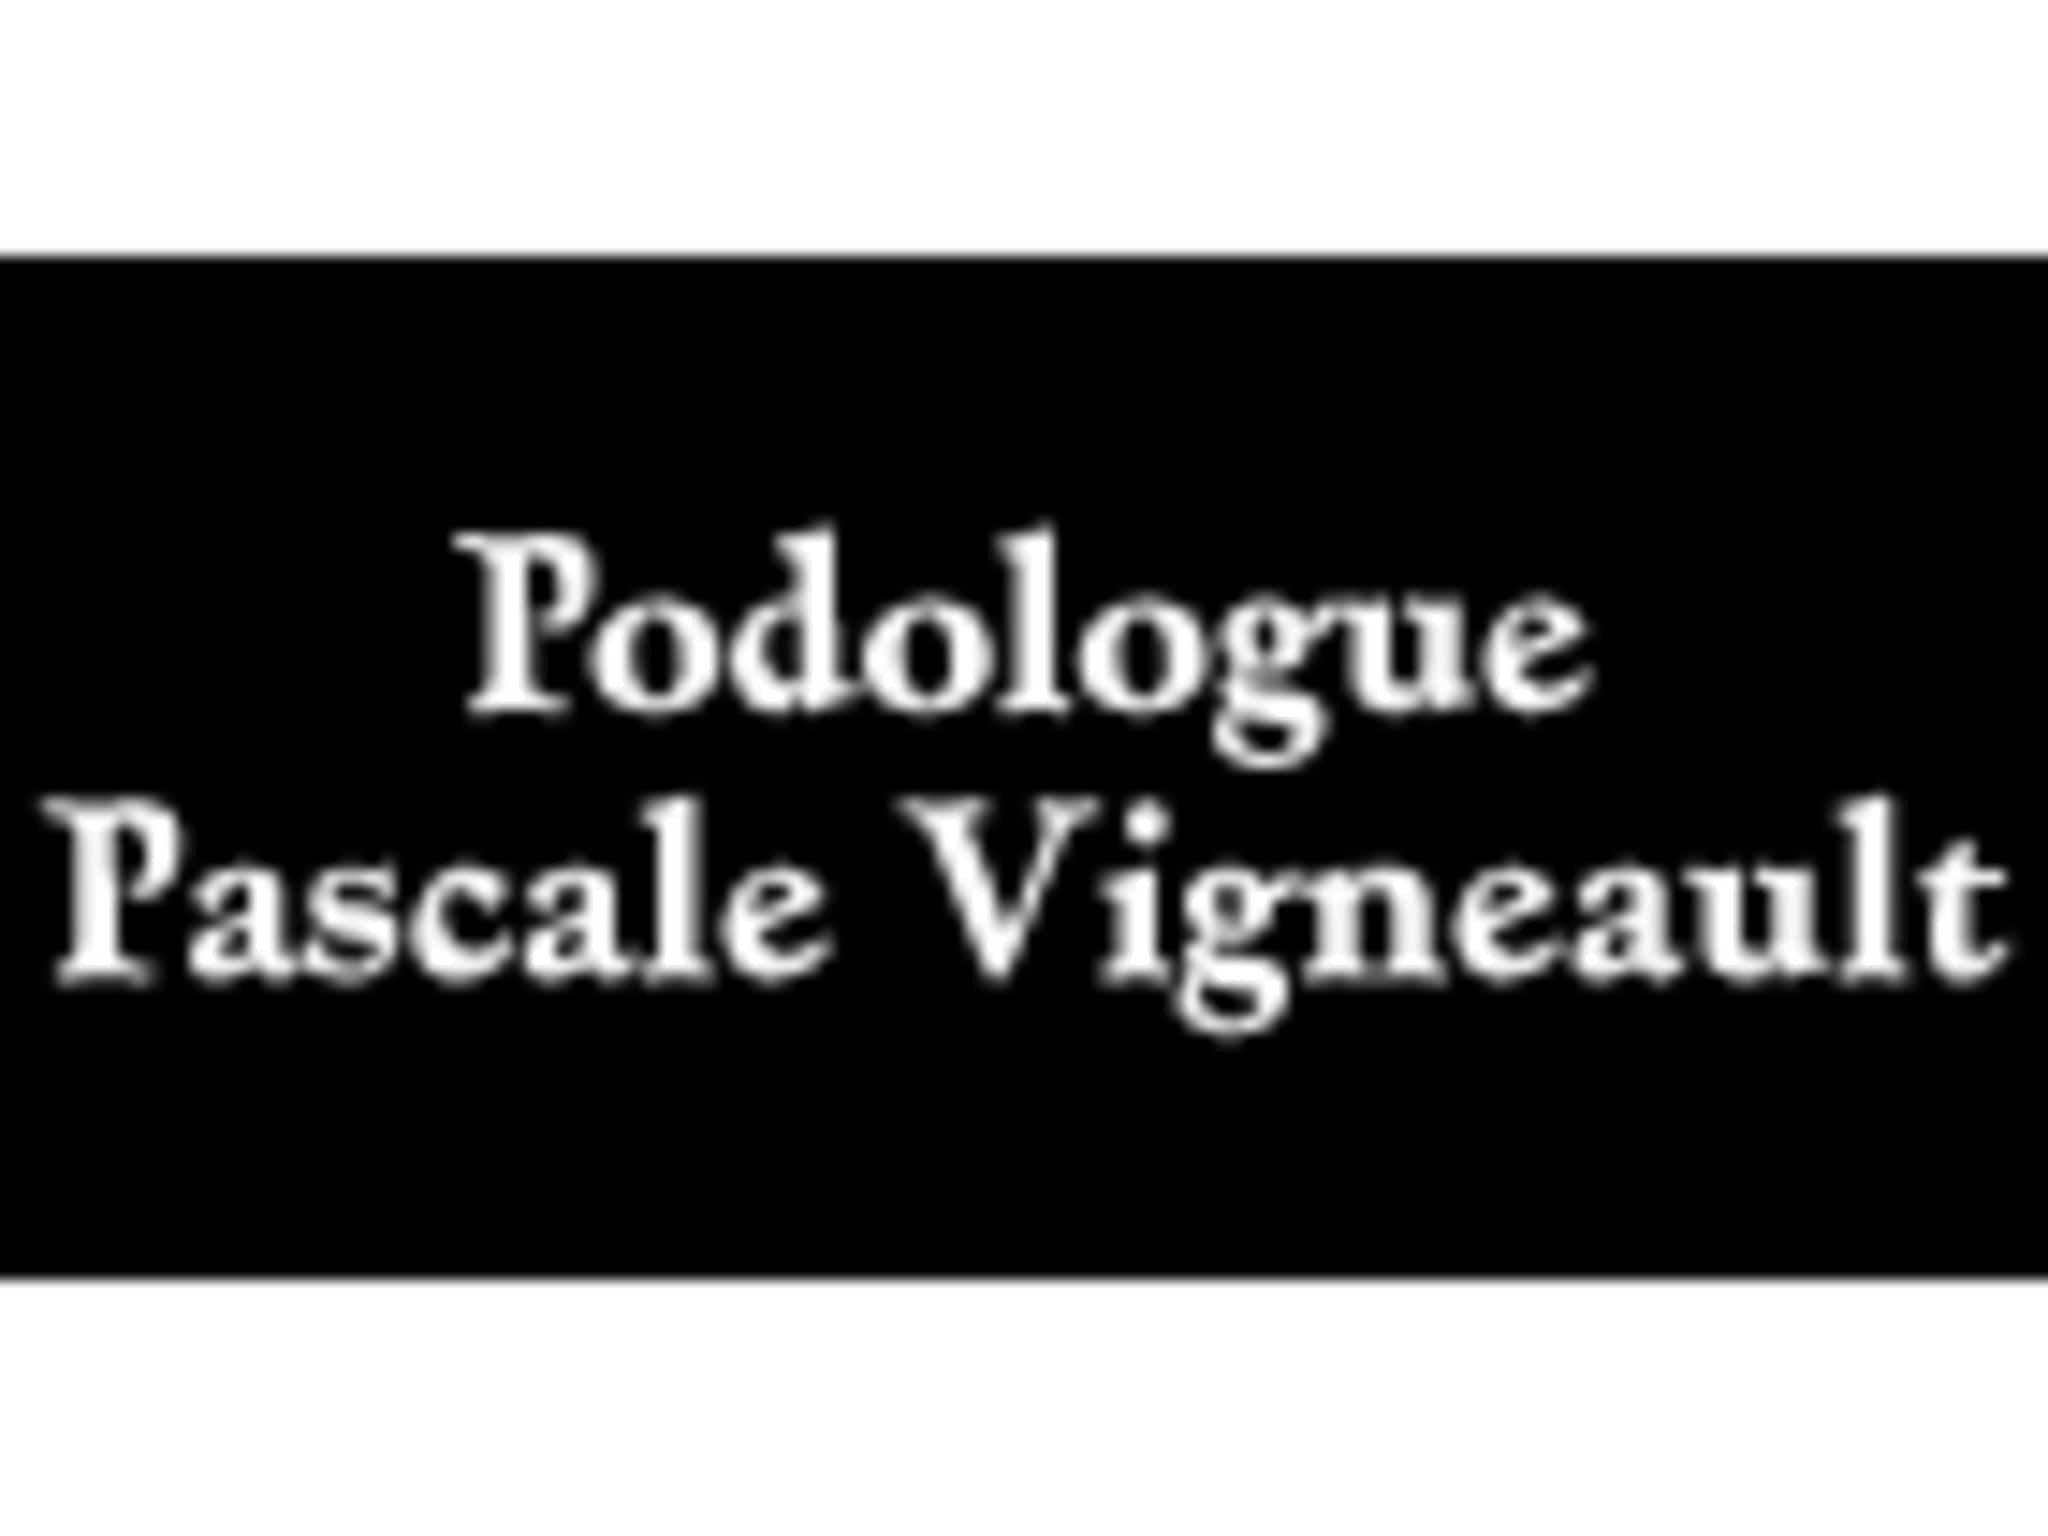 photo Podologue Pascale Vigneault